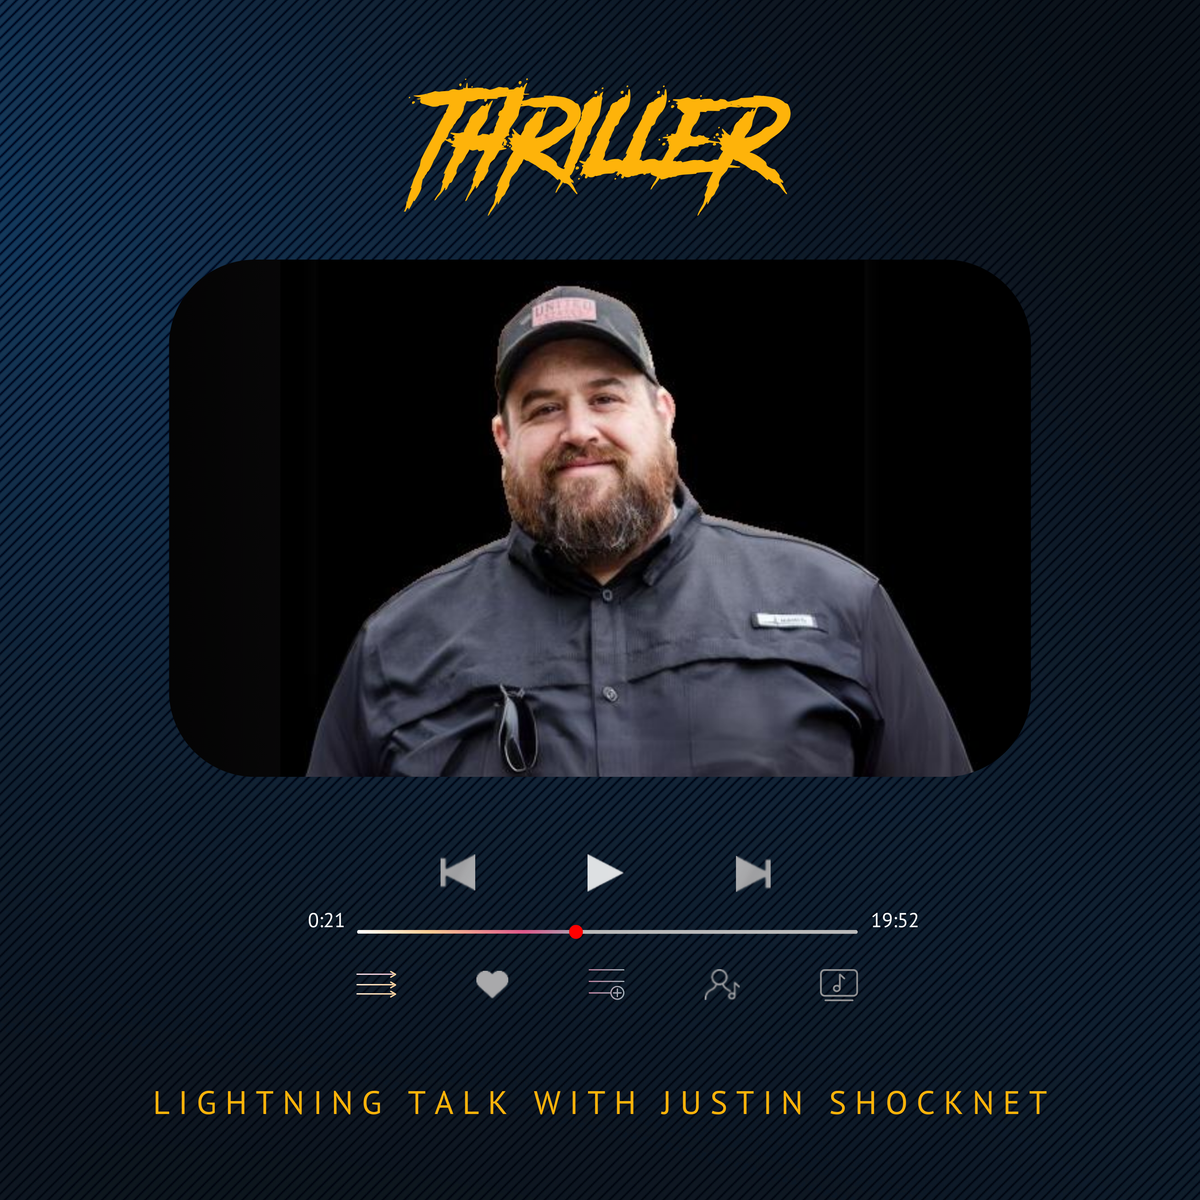 Lightning talk with Justin Shocknet